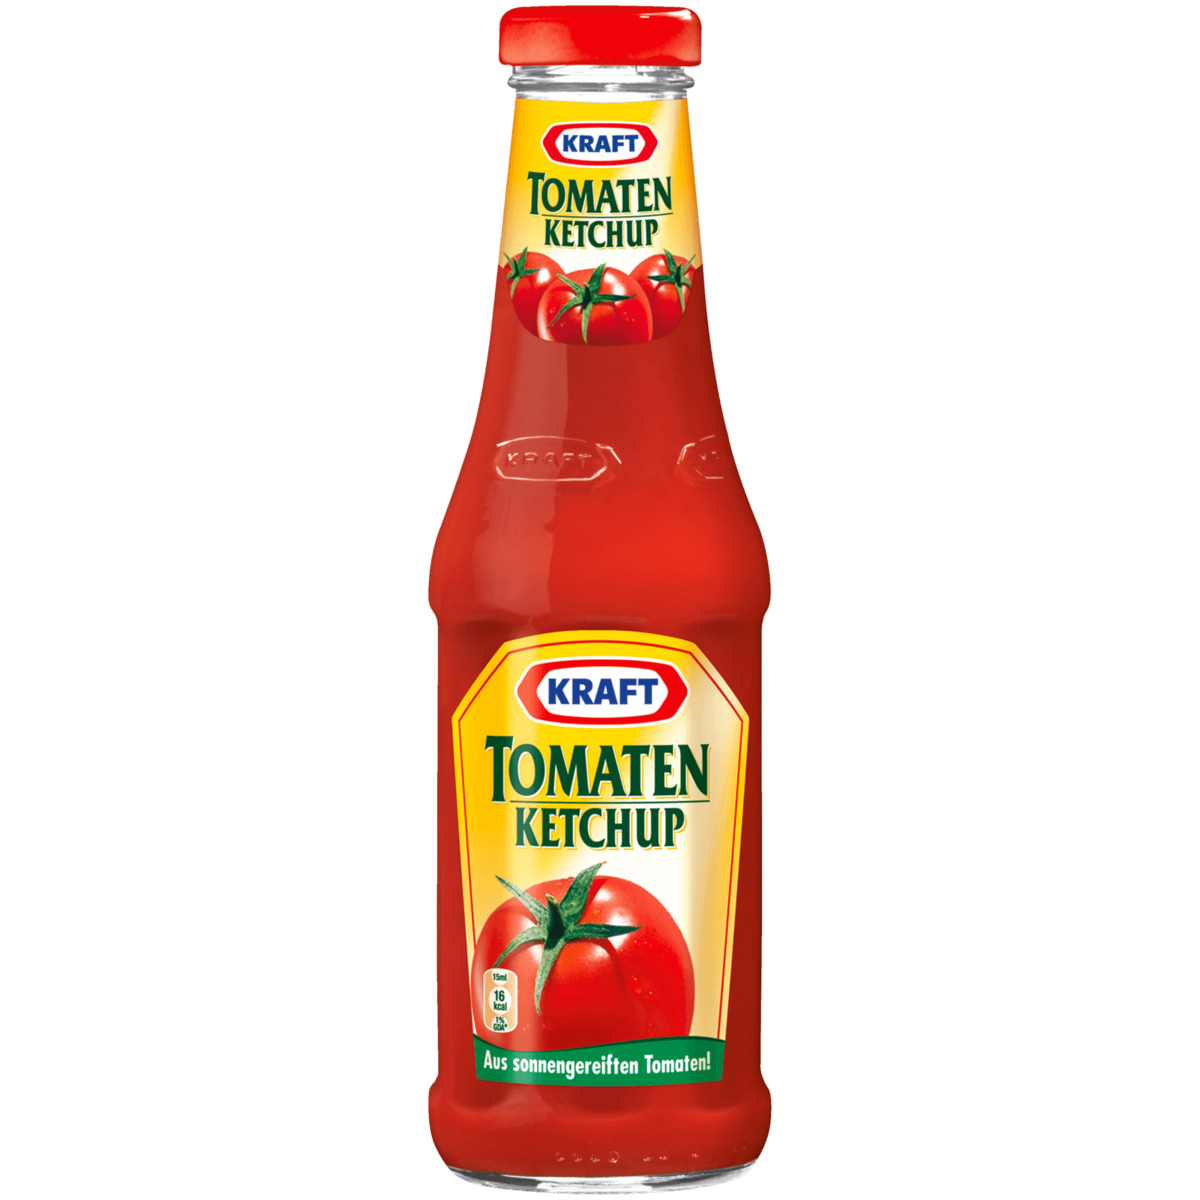 Kraft Tomaten Ketchup 500ml von REWE ansehen!